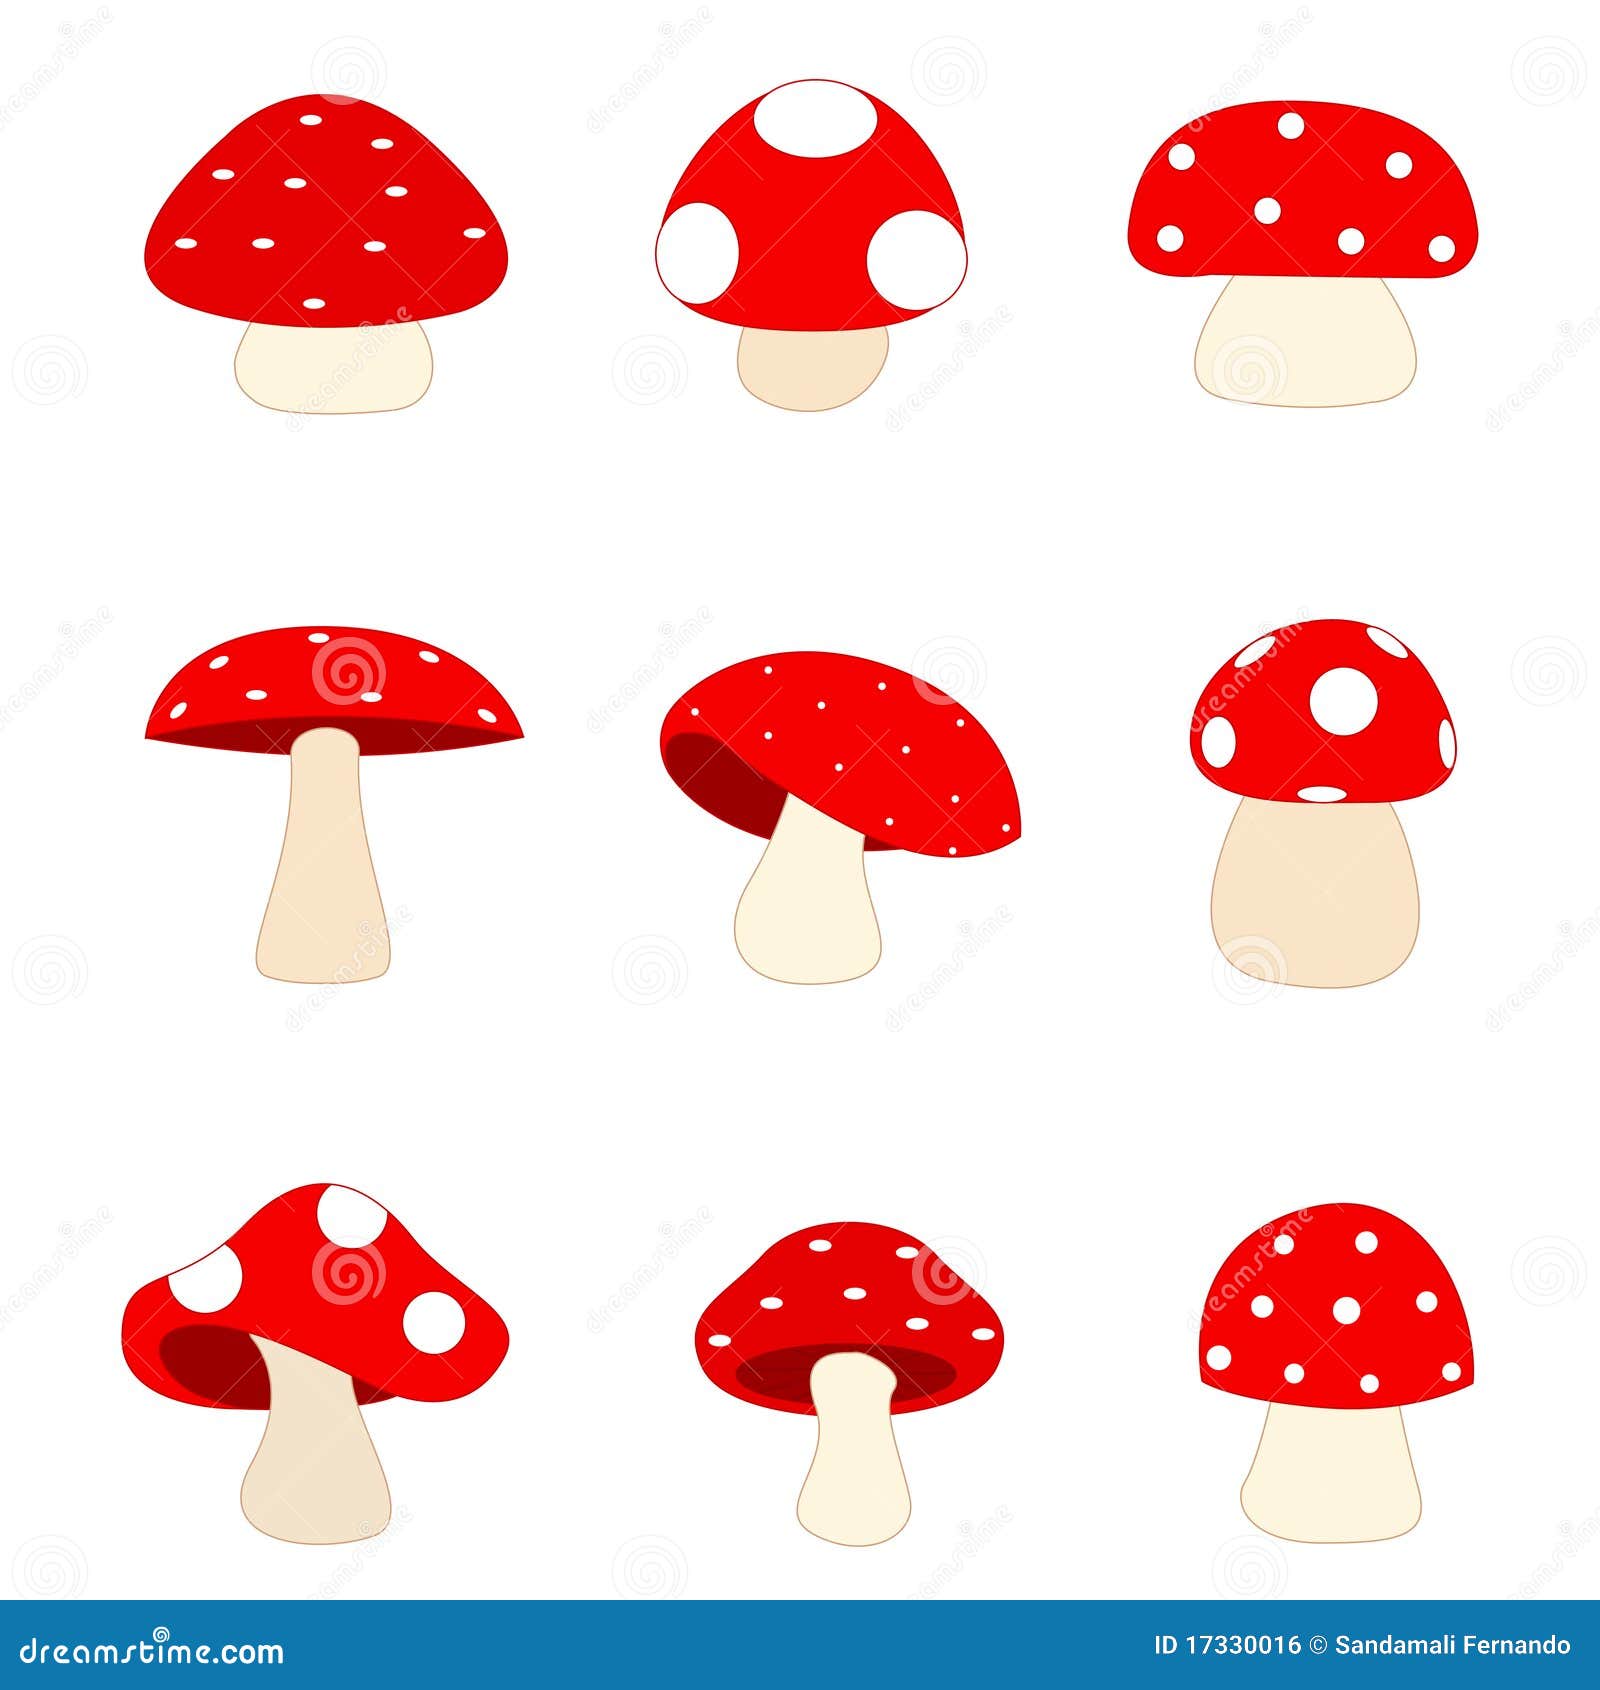 mushrooms / mushroom